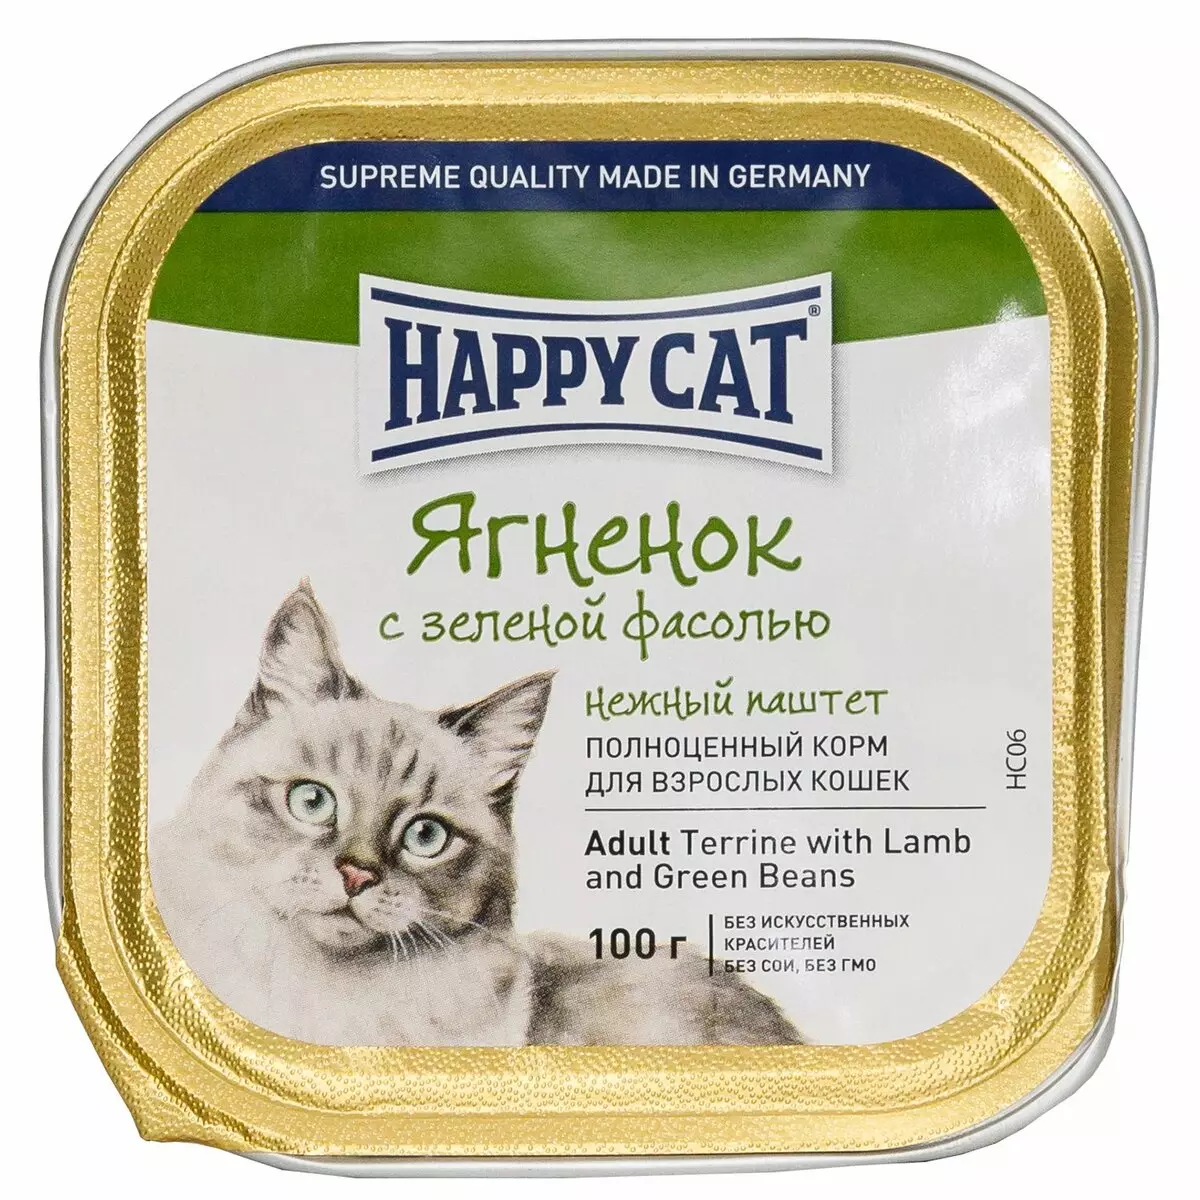 Feed do gato do gato feliz: a composição do alimento molhado e seco para gatinhos e gatos esterilizados, alimento para gatos castrados. Avaliações 22070_31